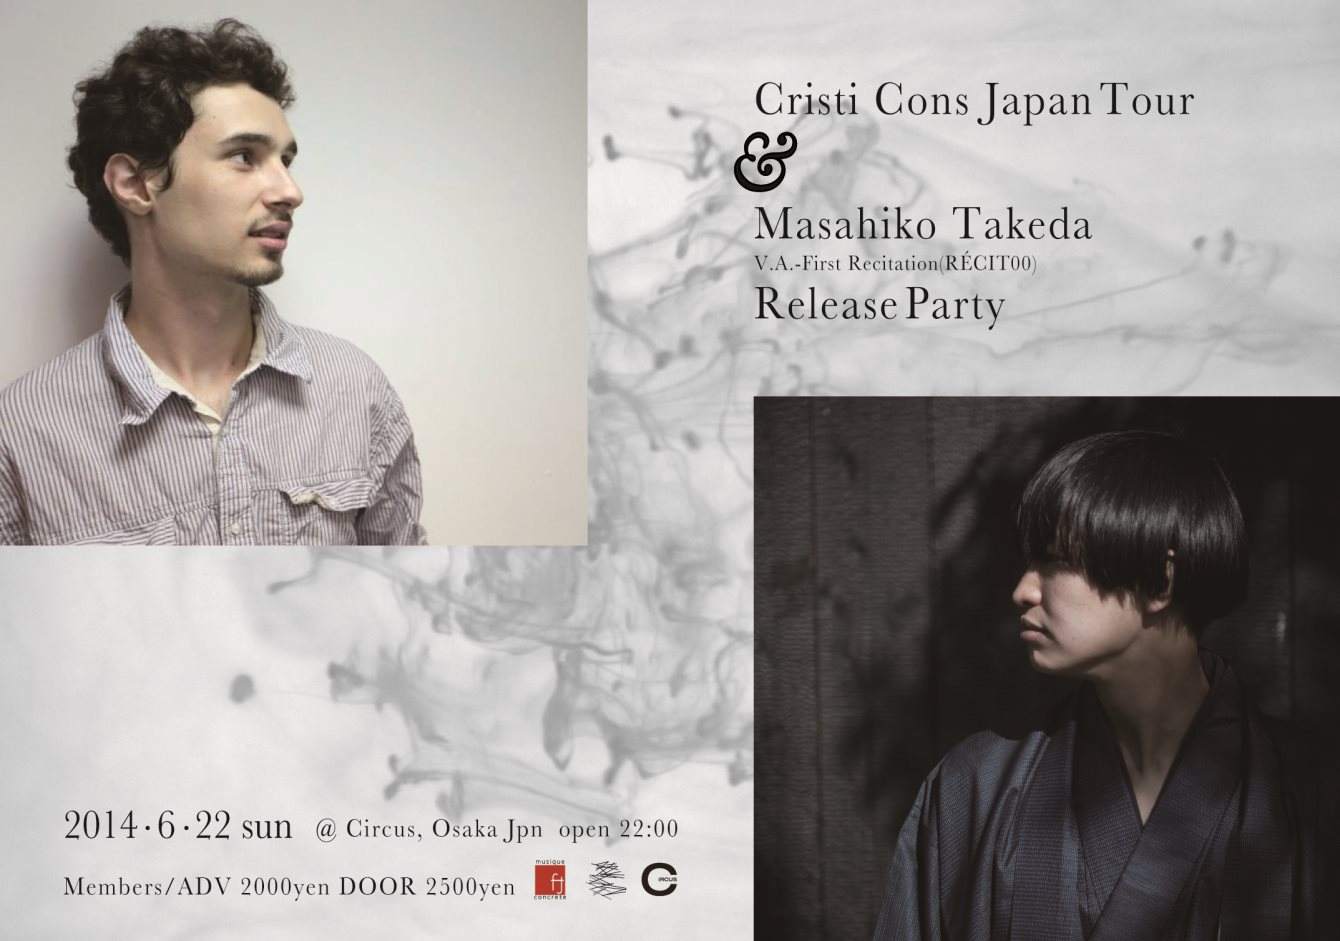 Cristi Cons Japan Tour & Masahiko Takeda Release Party - フライヤー表